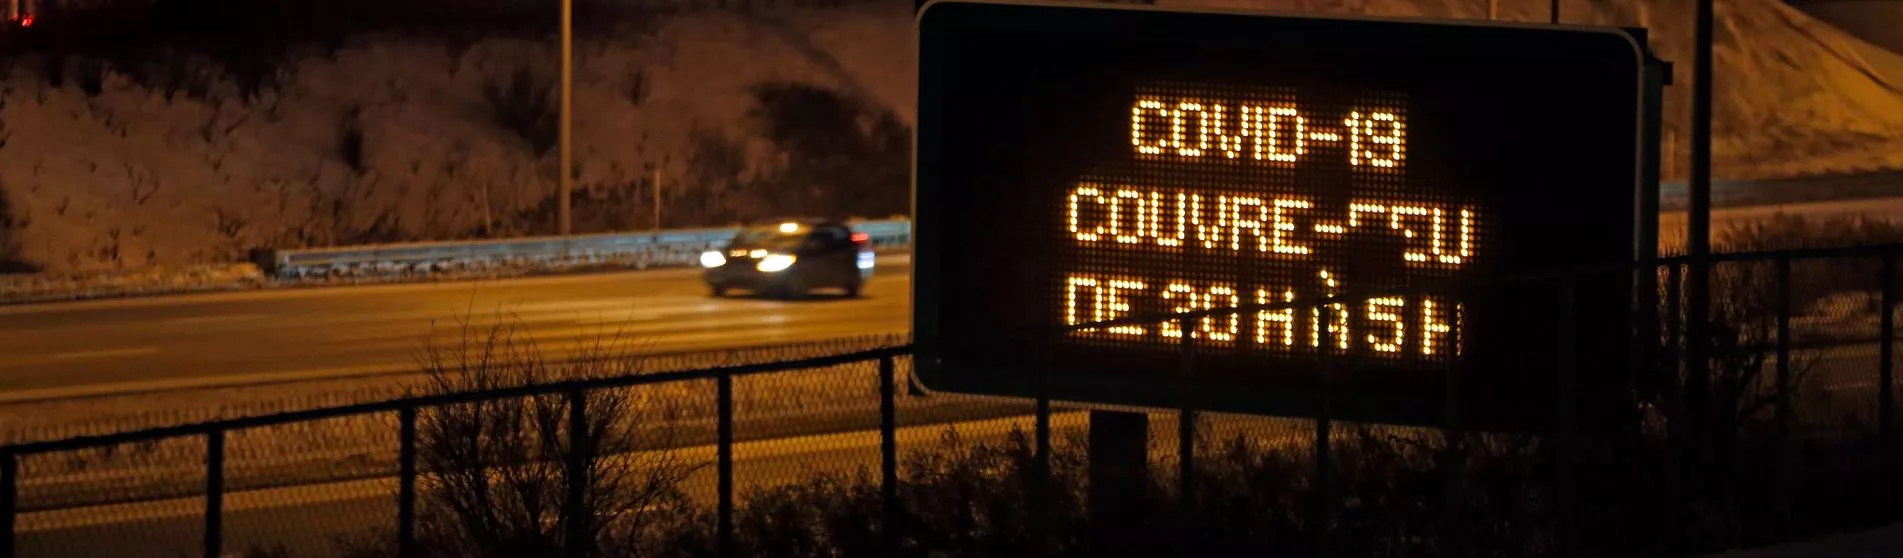 COVID19 curfew sign